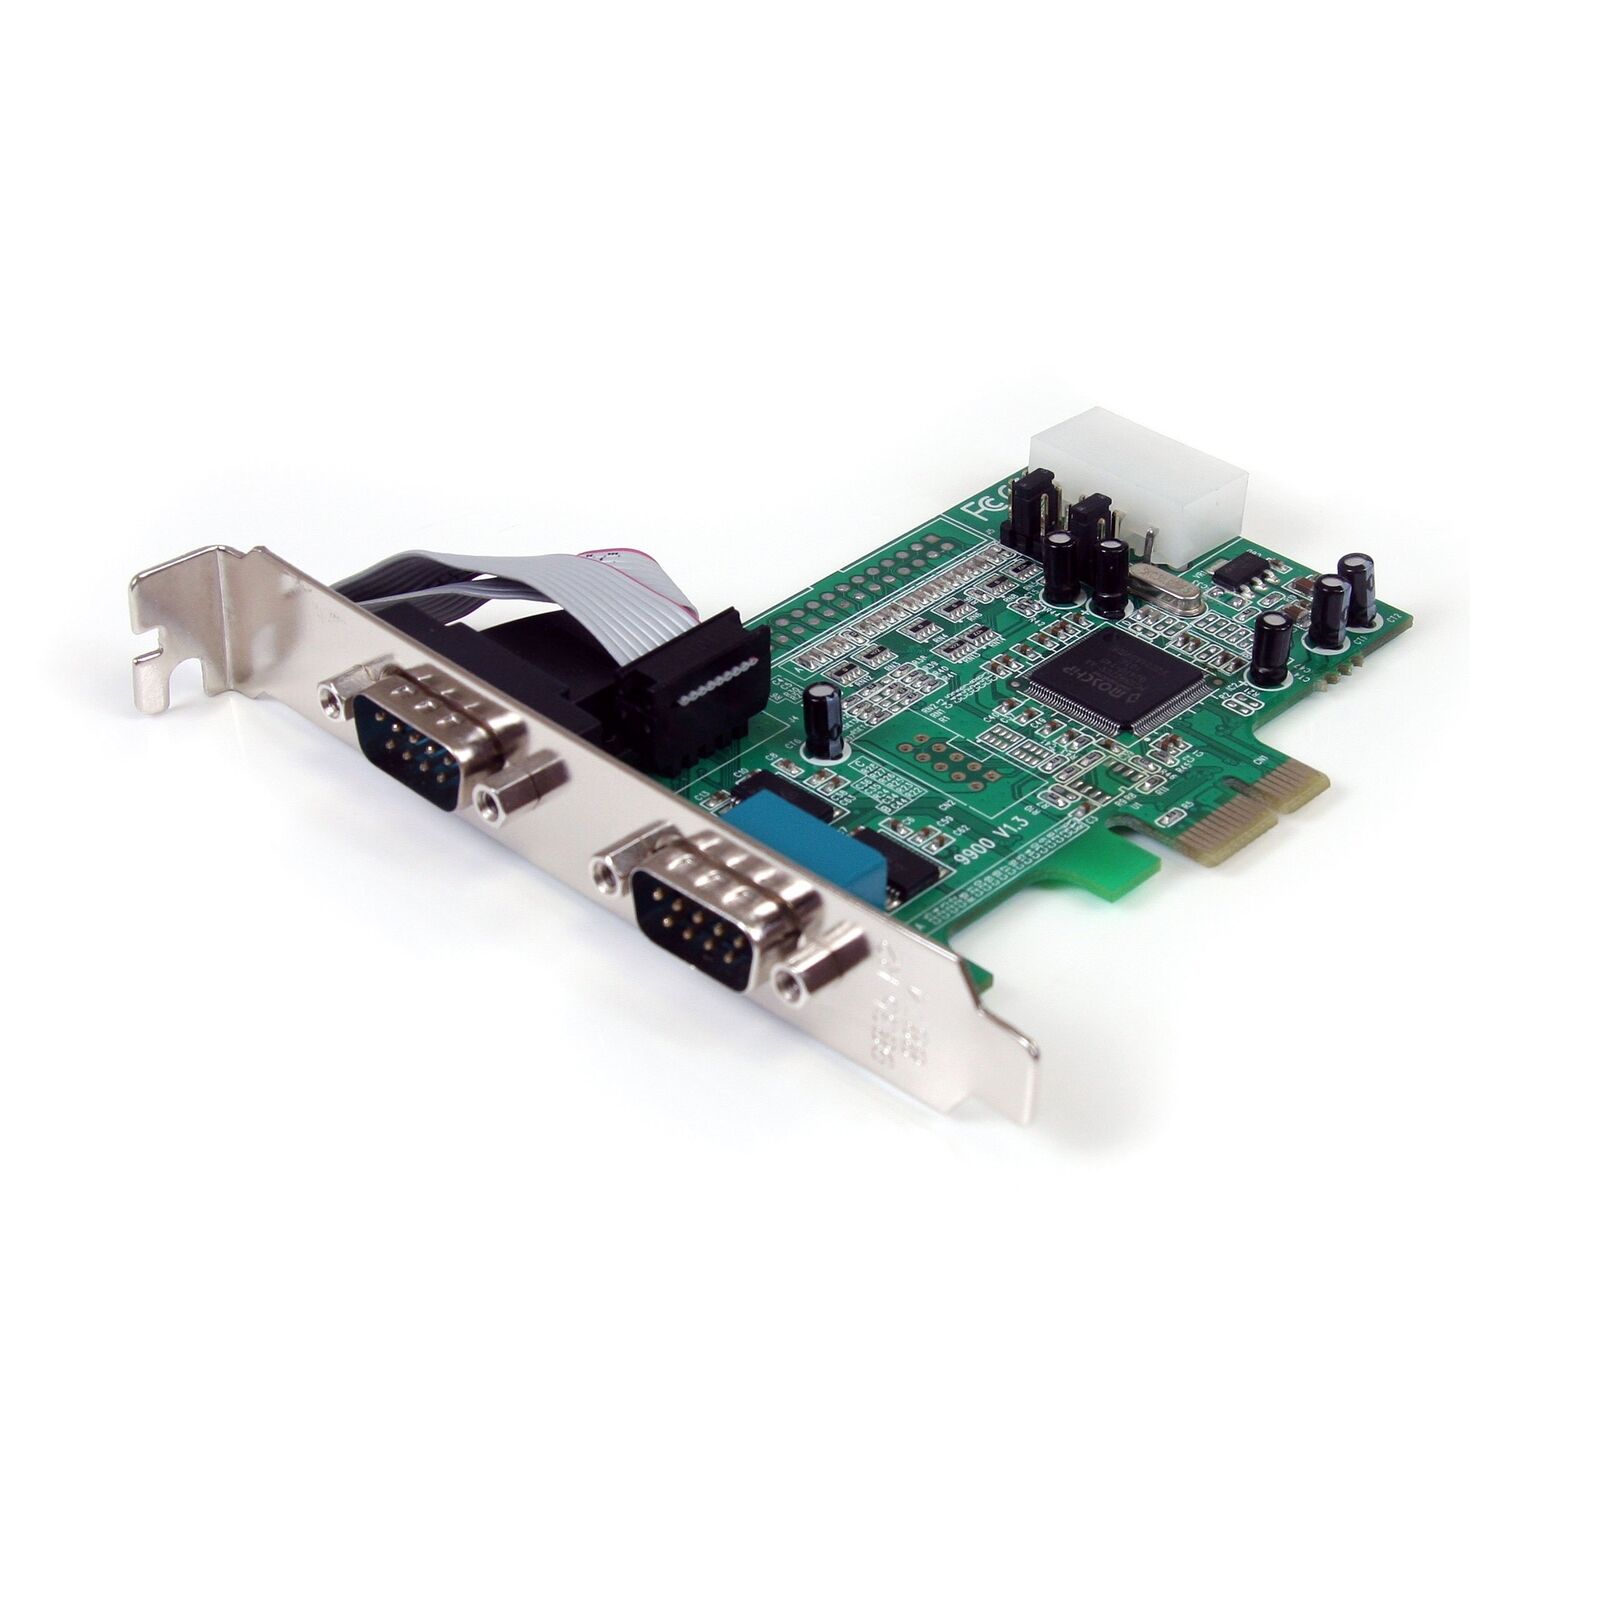 StarTech.com PEX2S553 2 Port Native PCIe RS232 Serial Adapter Card with 16550 UA